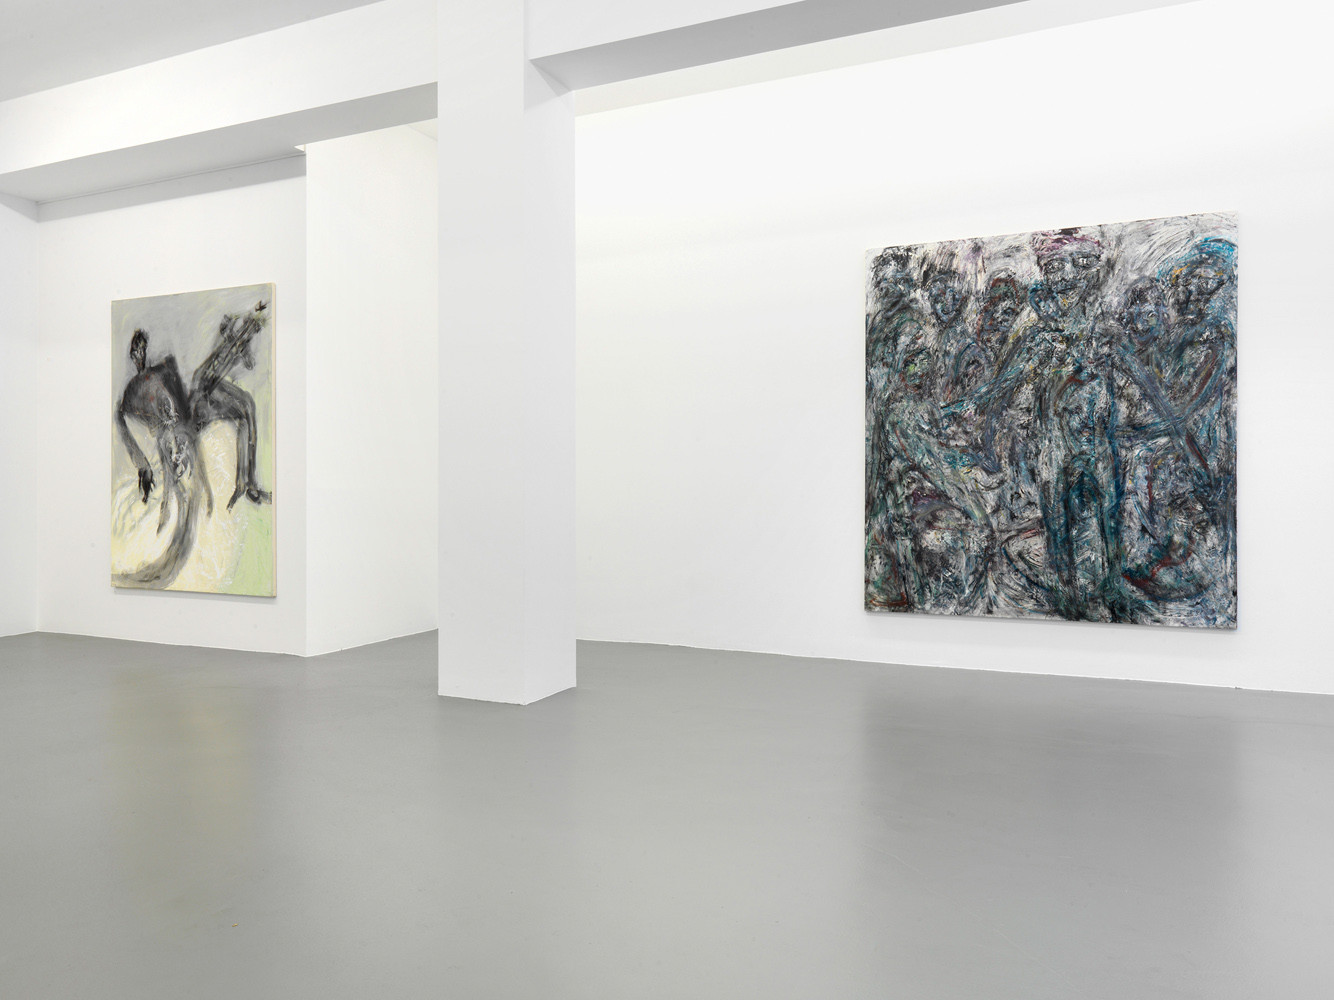 Martin Disler, ‘Malerei’, Installation view, Buchmann Galerie, 2014